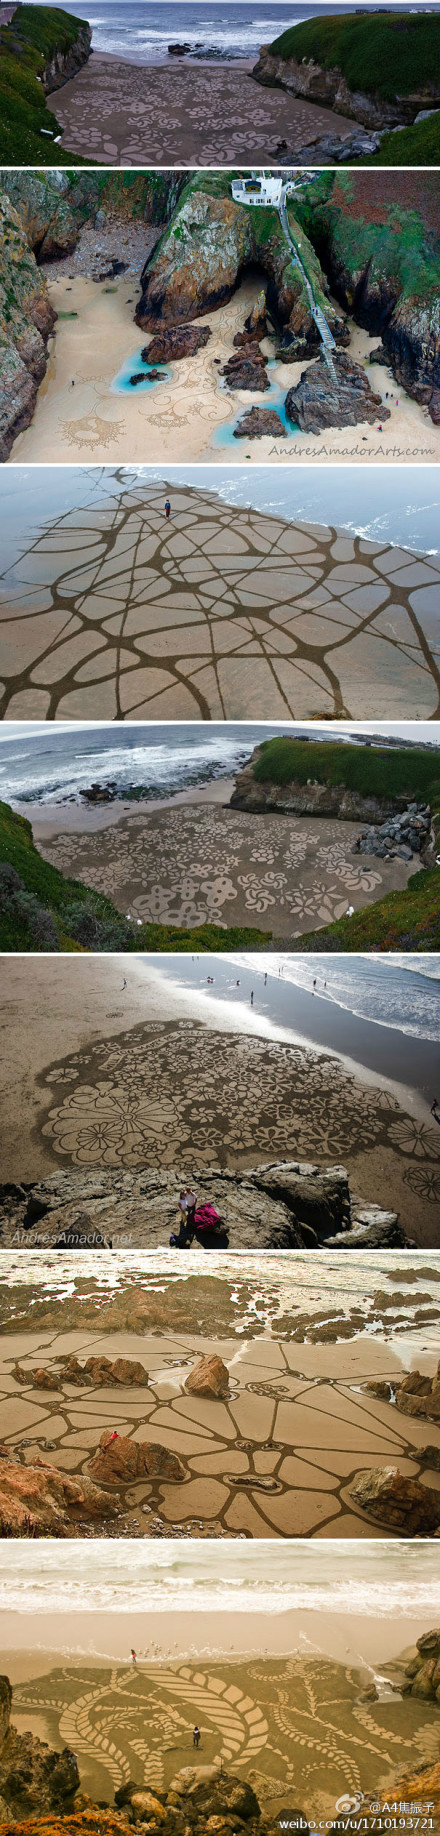 美国艺术家Andres Amador的海滩行为作品